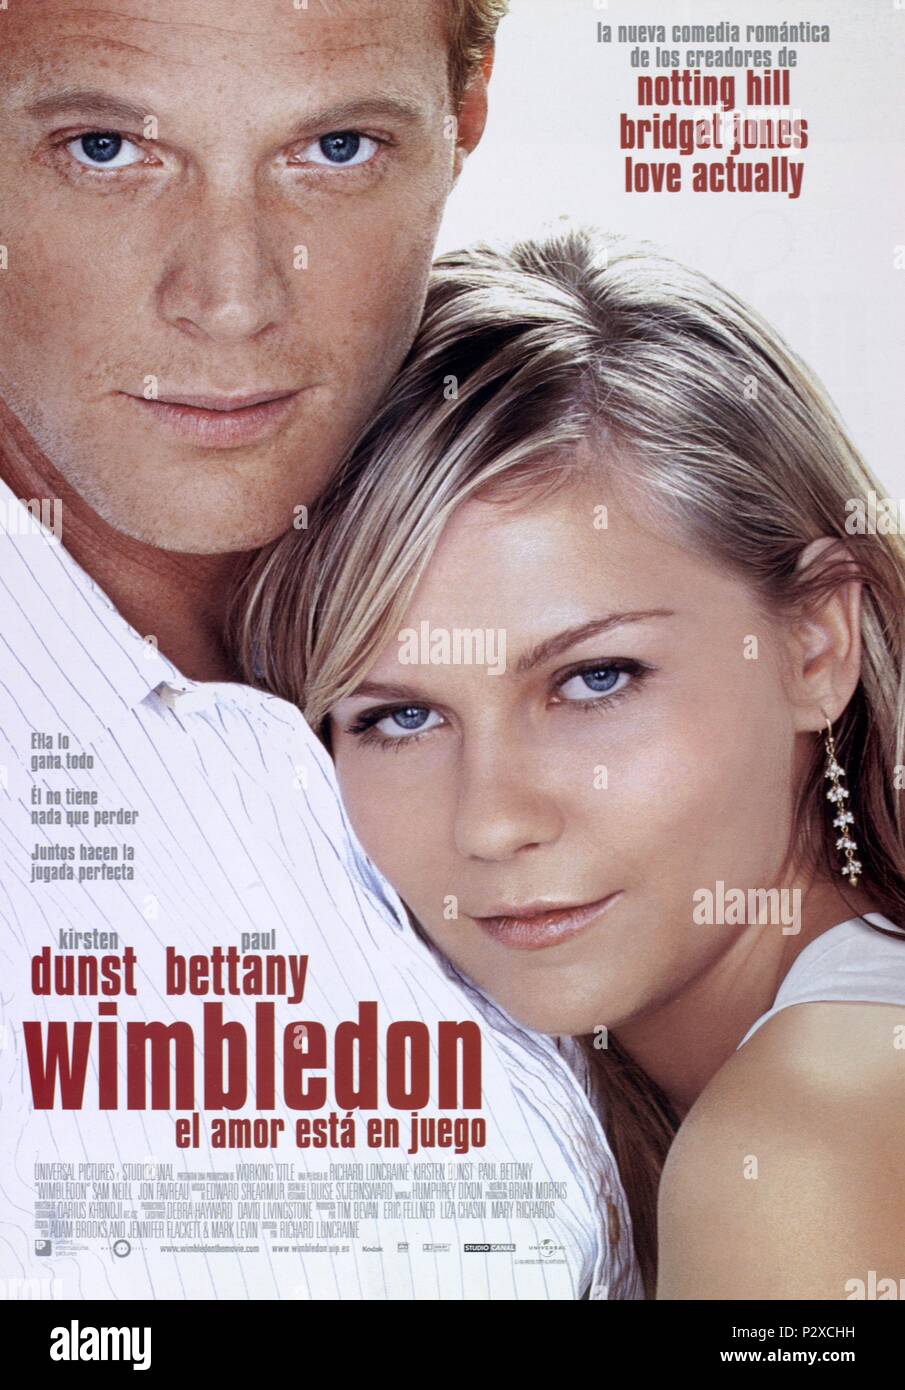 Wimbledon film hi-res stock photography and images - Alamy